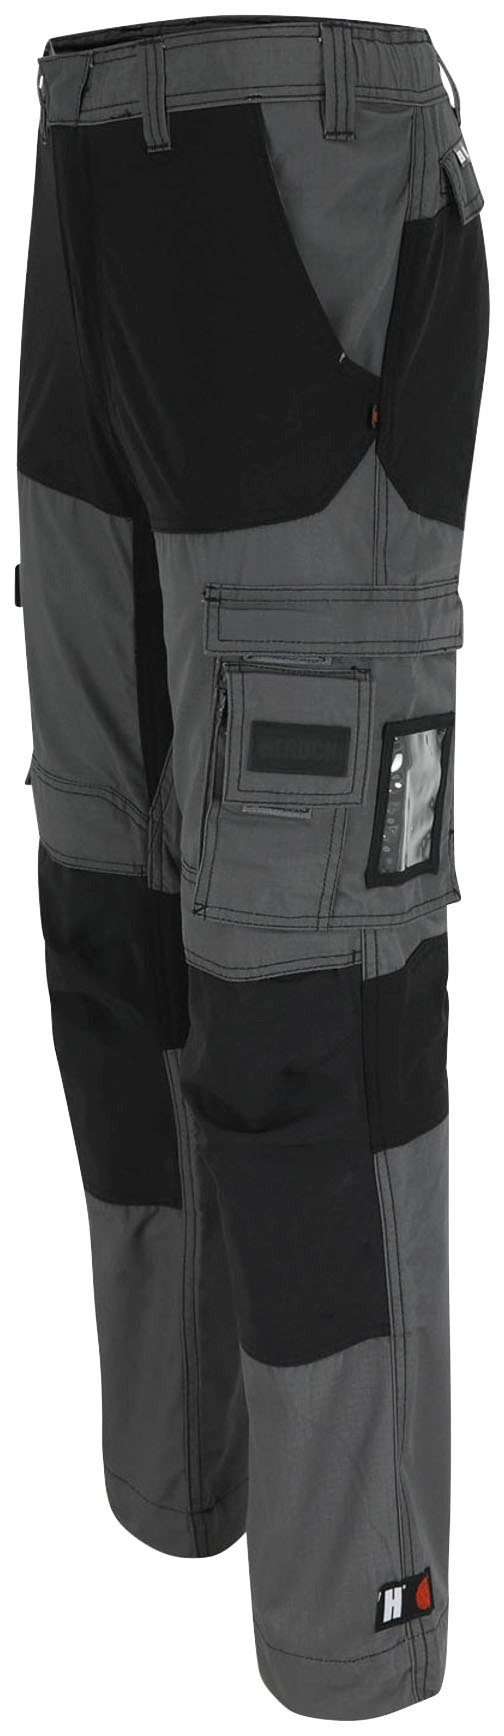 Herock Arbeitshose Hector Multi-Pocket, verstärkte Knietaschen verdeckter grau 4-Wege-Stretch, Hoses Knopf